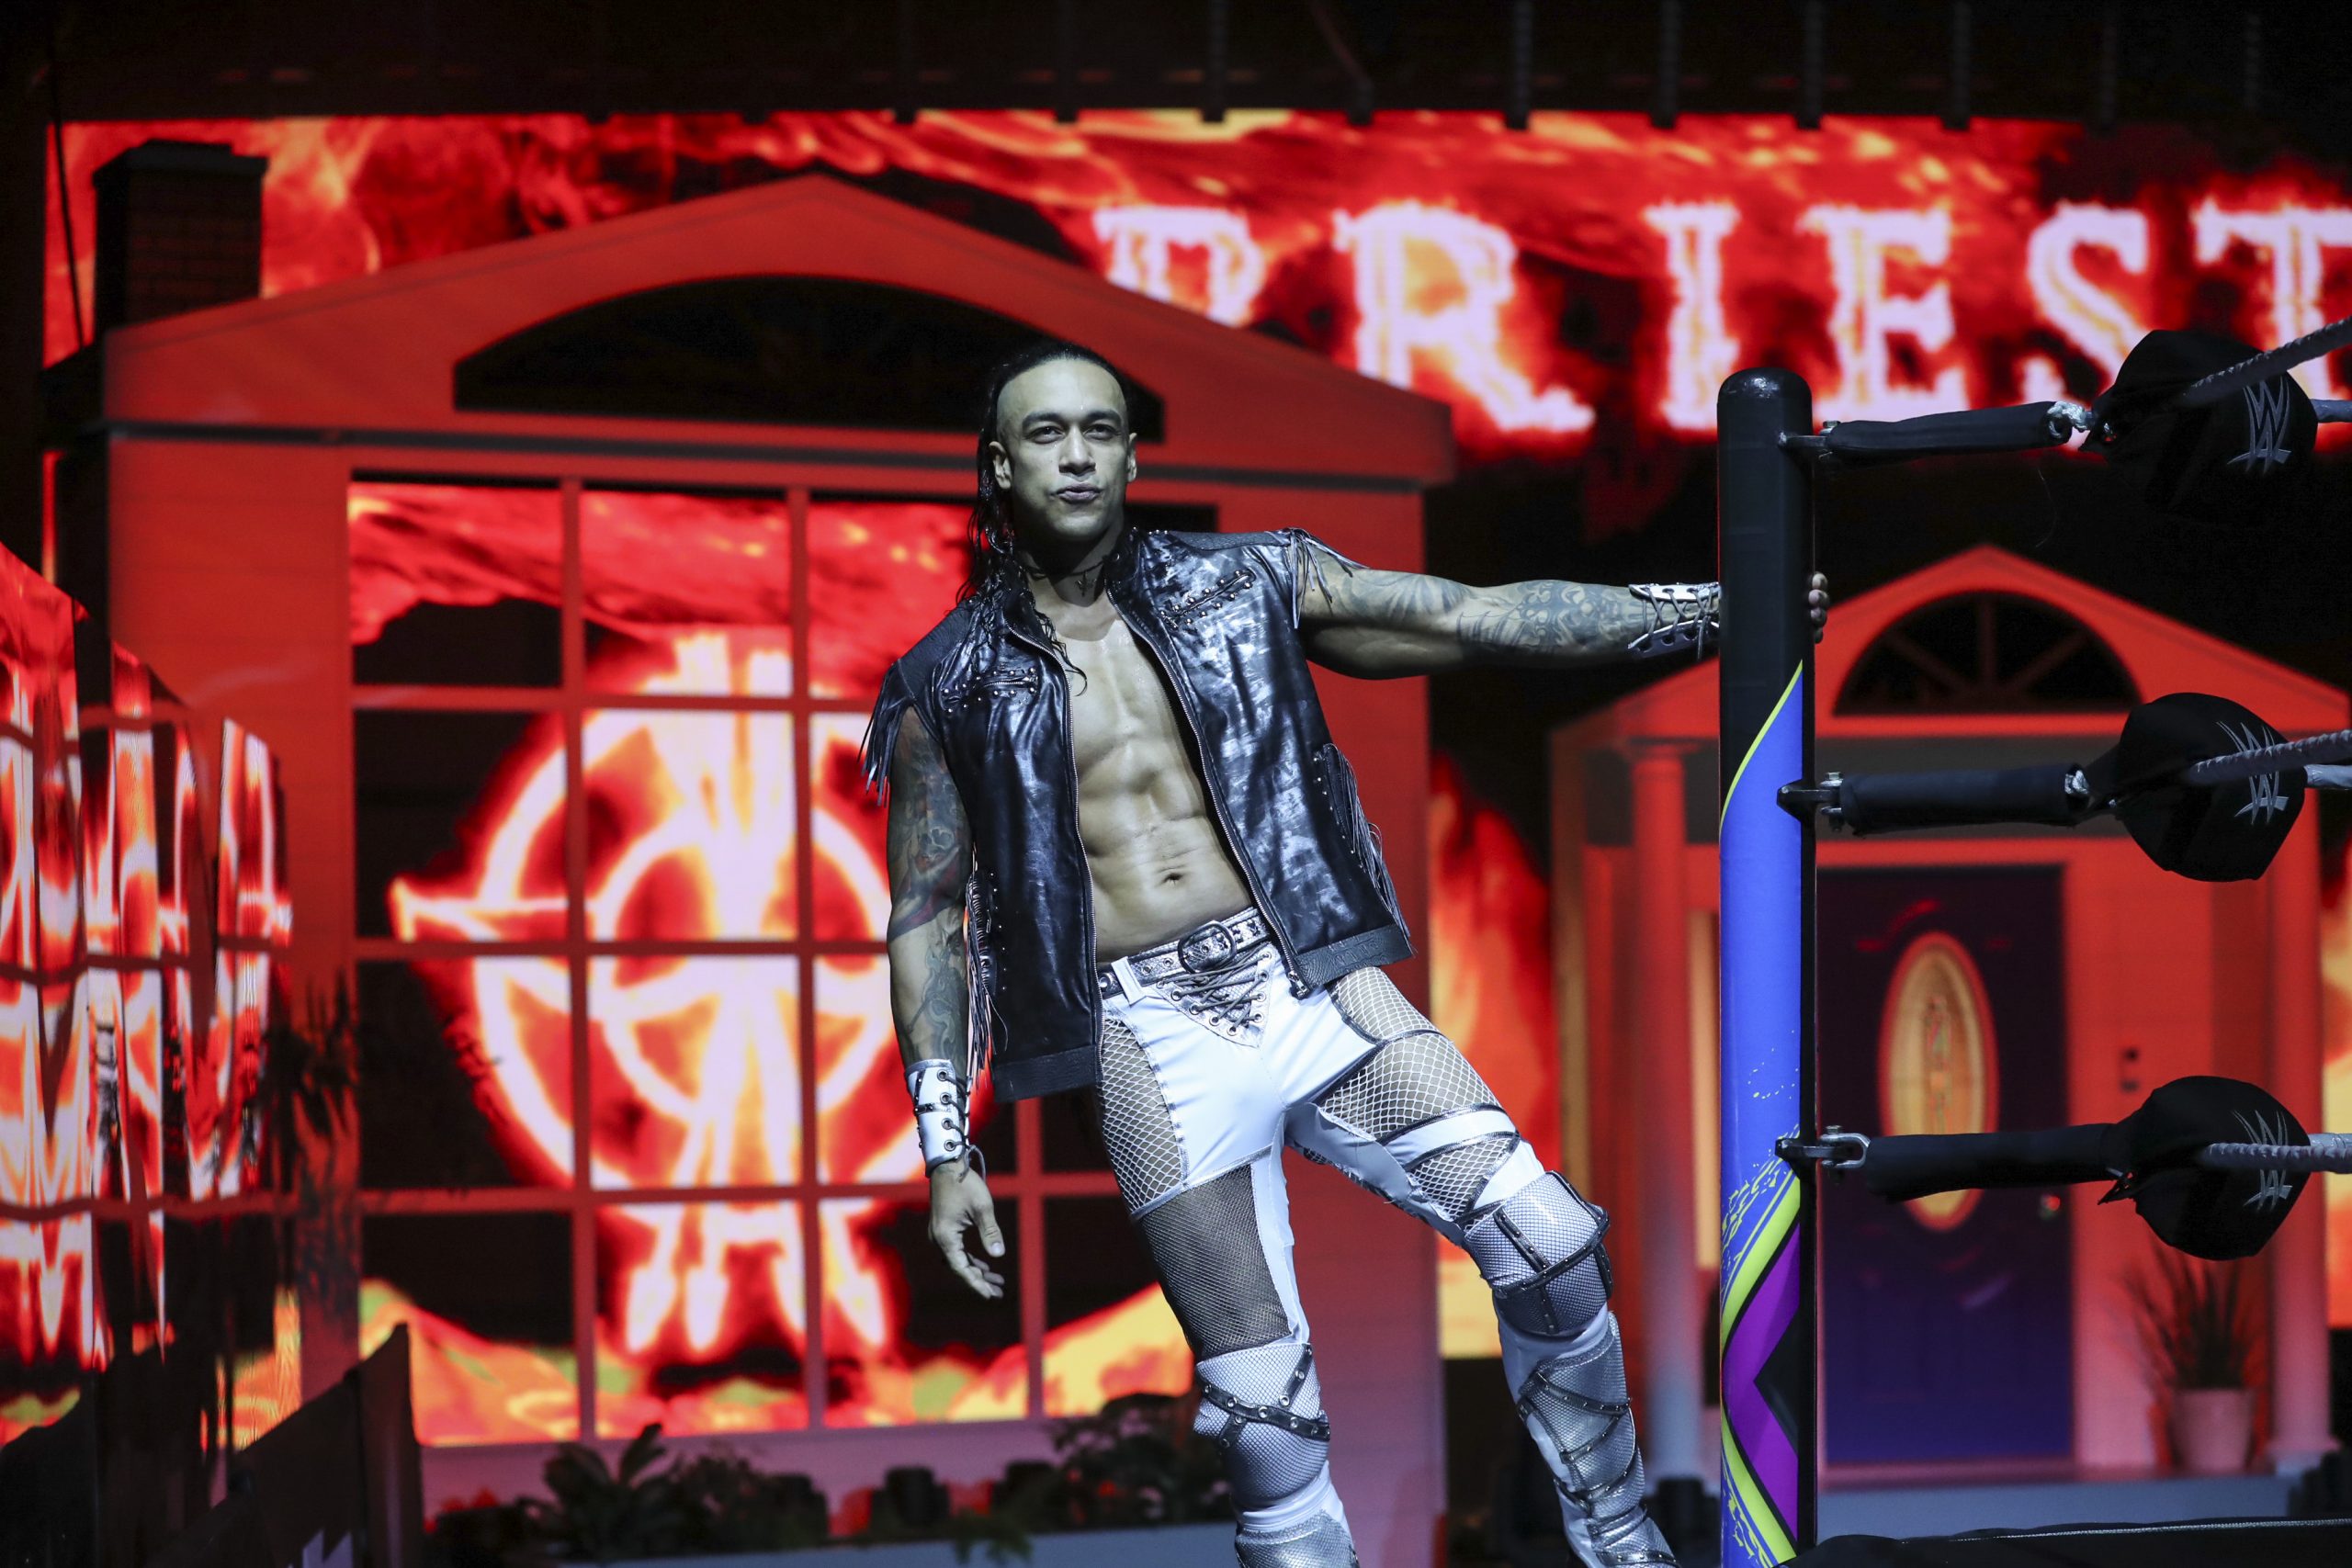 "Quiero ser recordado en el ring": El sueño y las metas de Damian Priest en la WWE